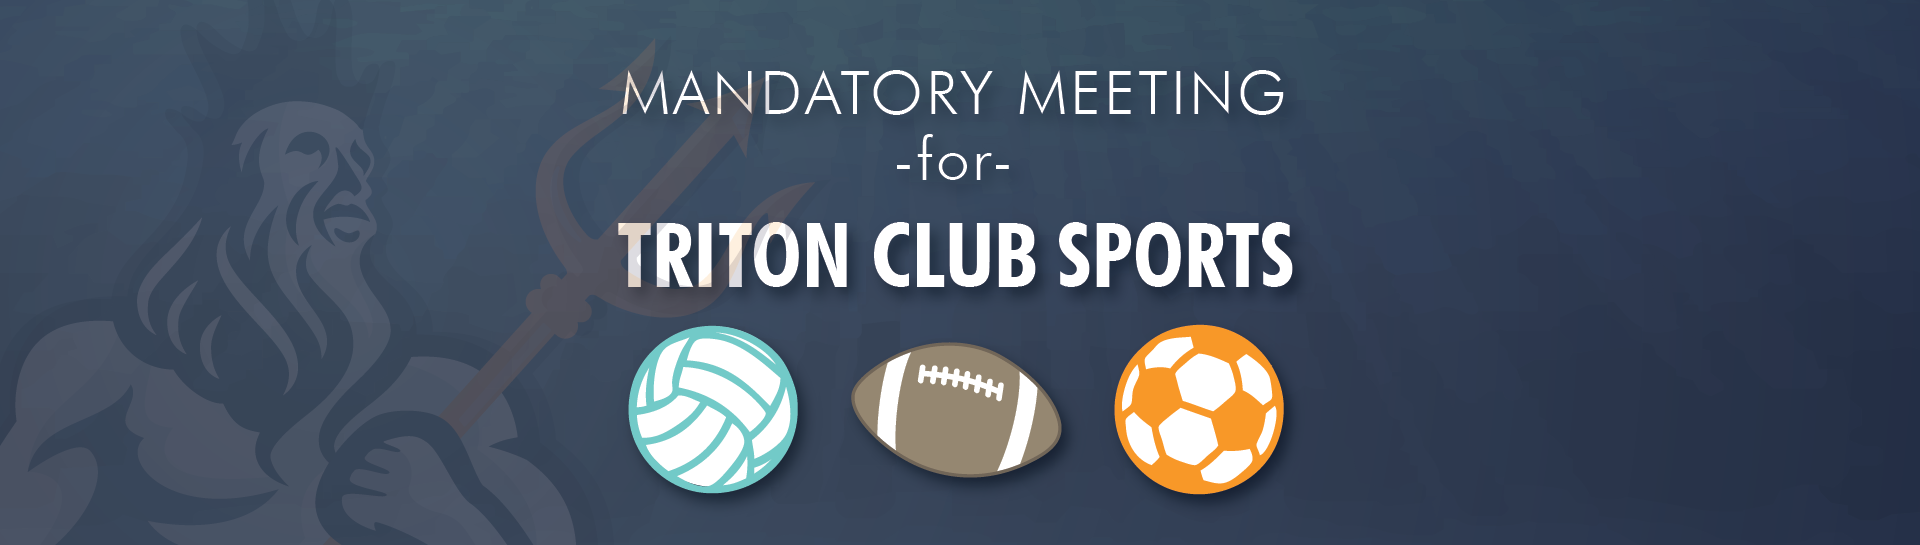 Triton Club Sport mandatory meeting